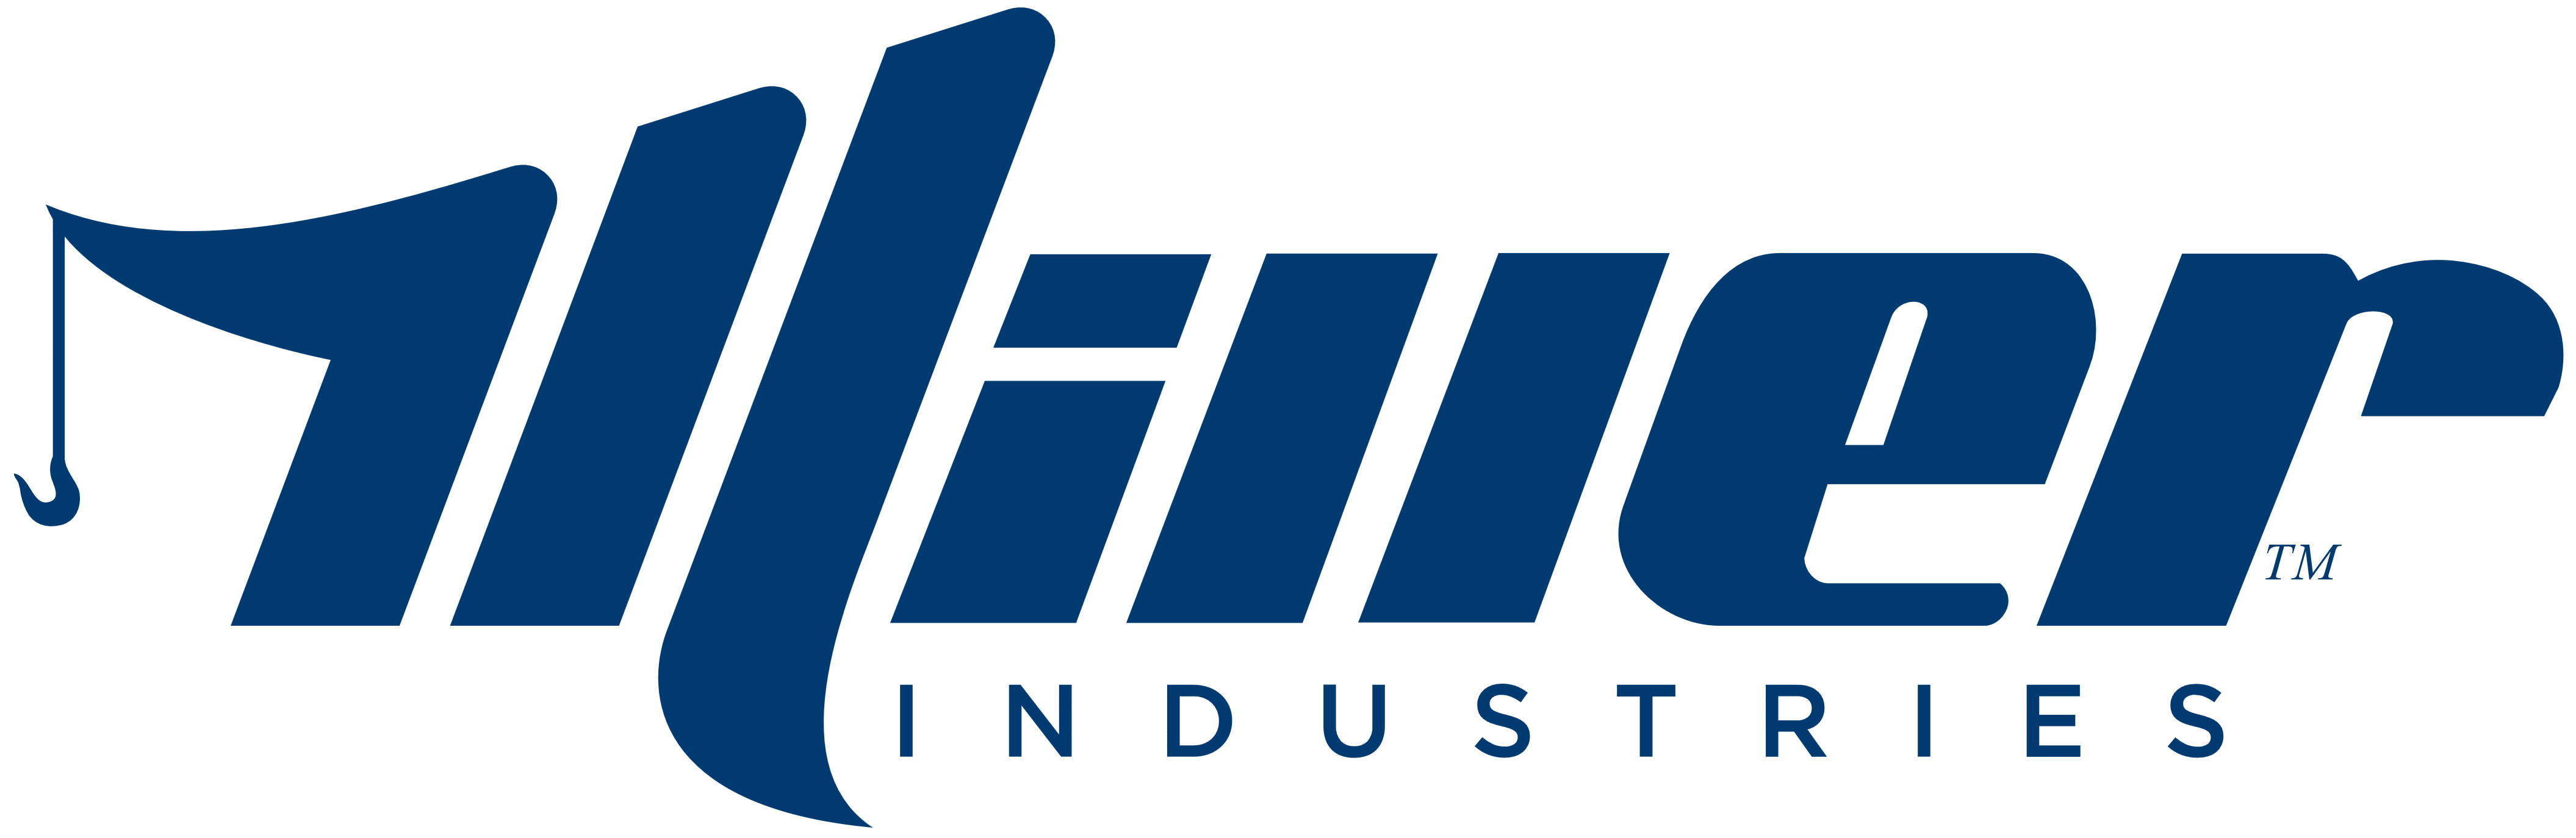 Miller Industries logo, logotype